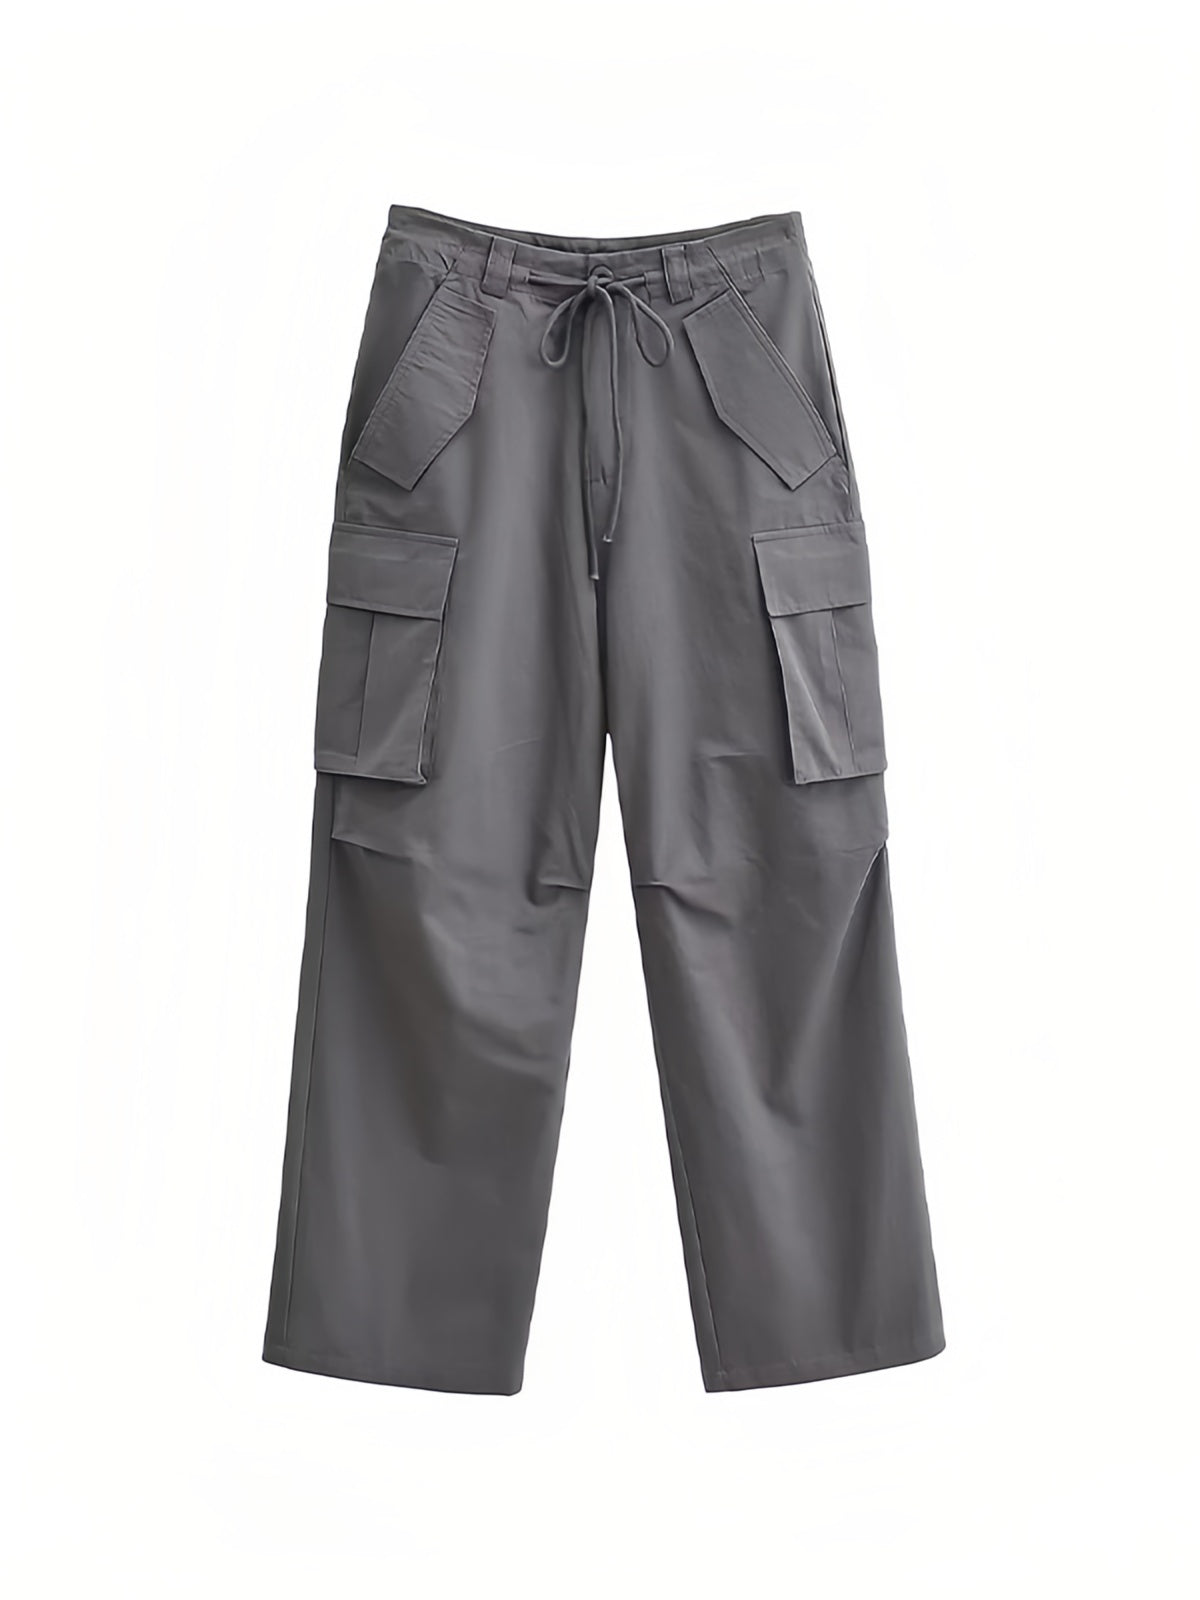 Pantalon cargo hip hop avec plusieurs poches et cordon de serrage